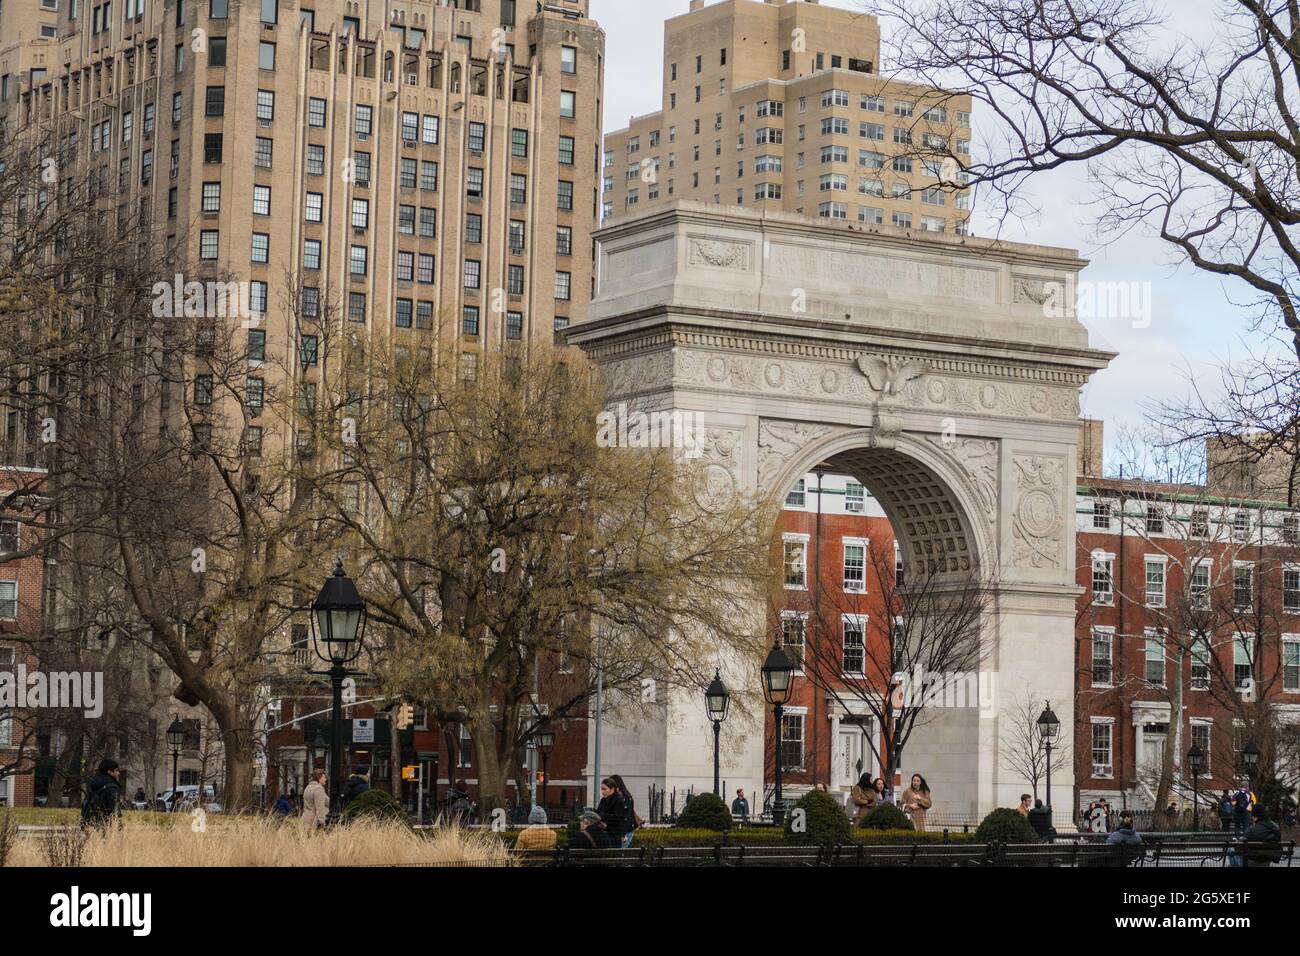 New York, Etats-Unis, 28 janvier 2020: The Washington Square Arch est une arche triomphale en marbre dans le Washington Square Park, dans le quartier de Greenwich Village Banque D'Images